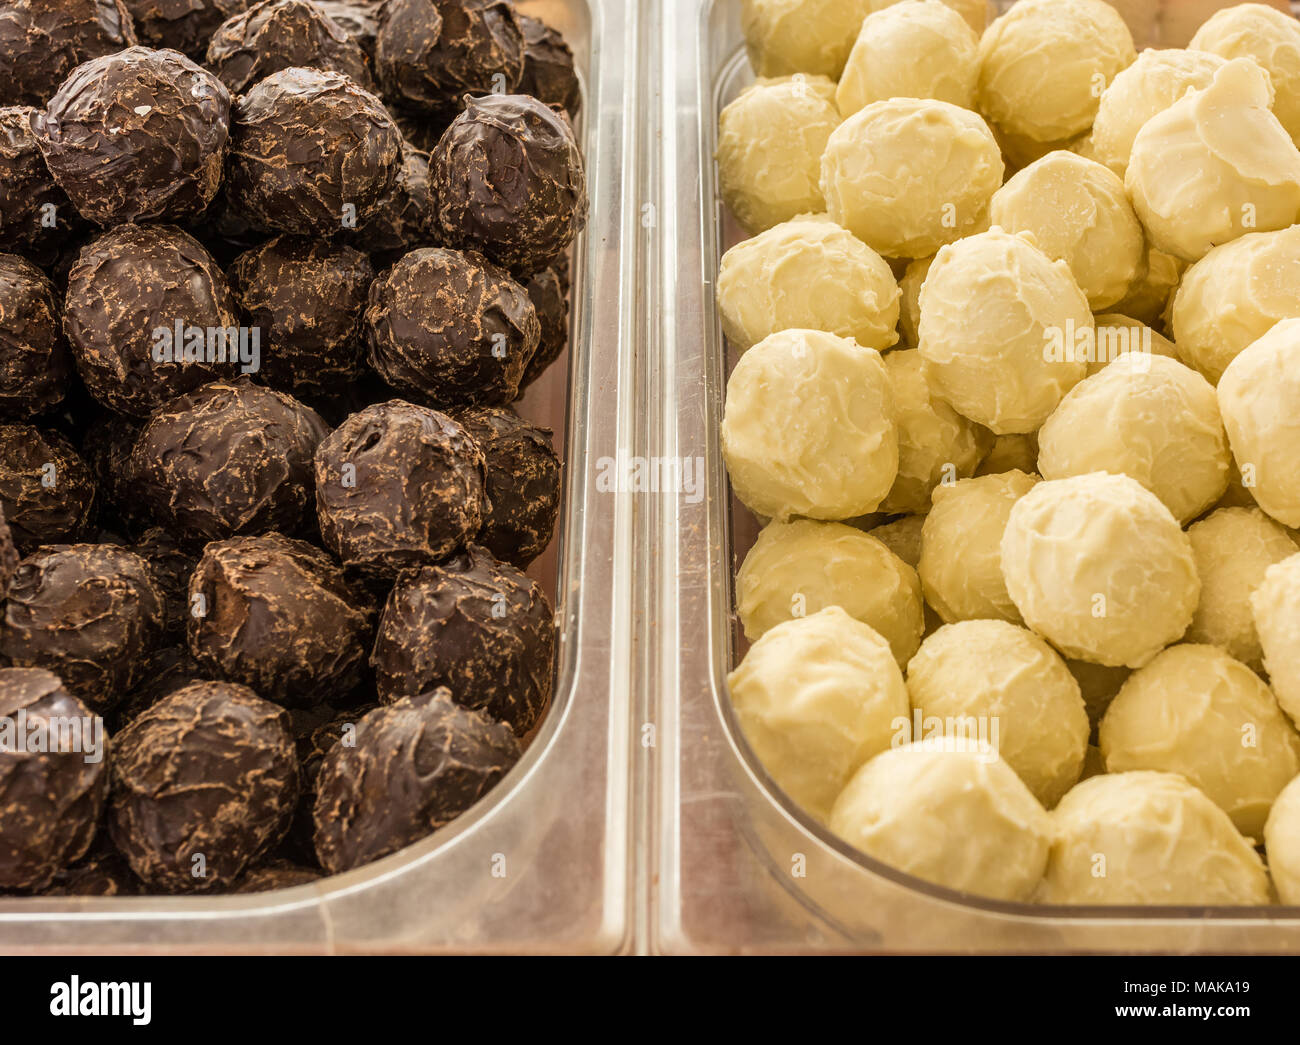 Köstliche Trüffel Pralinen. Weiße Trüffel Schokolade und dunklen Trüffel Schokolade. Close-up. Stockfoto